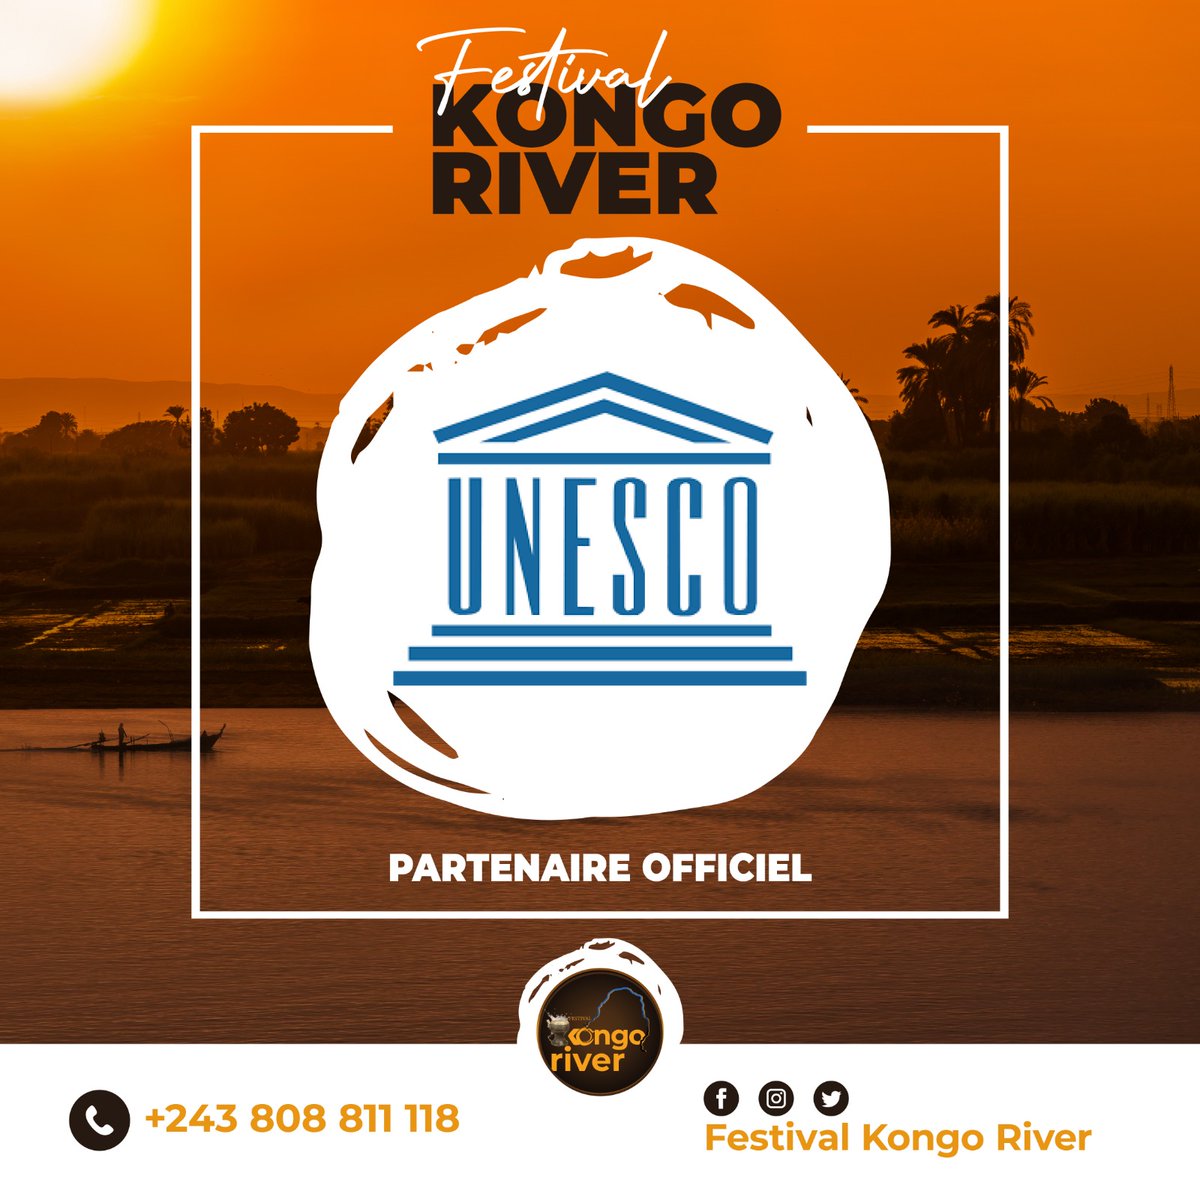 La 3ème édition du Festival Kongo River arrive bientôt et nous sommes ravis d'annoncer que l'@UNESCO  est désormais notre partenaire technique. Rejoignez-nous pour célébrer et protéger le fleuve Congo et son patrimoine culturel ! #FestivalKongoRiver #UNESCO #PatrimoineCulturel